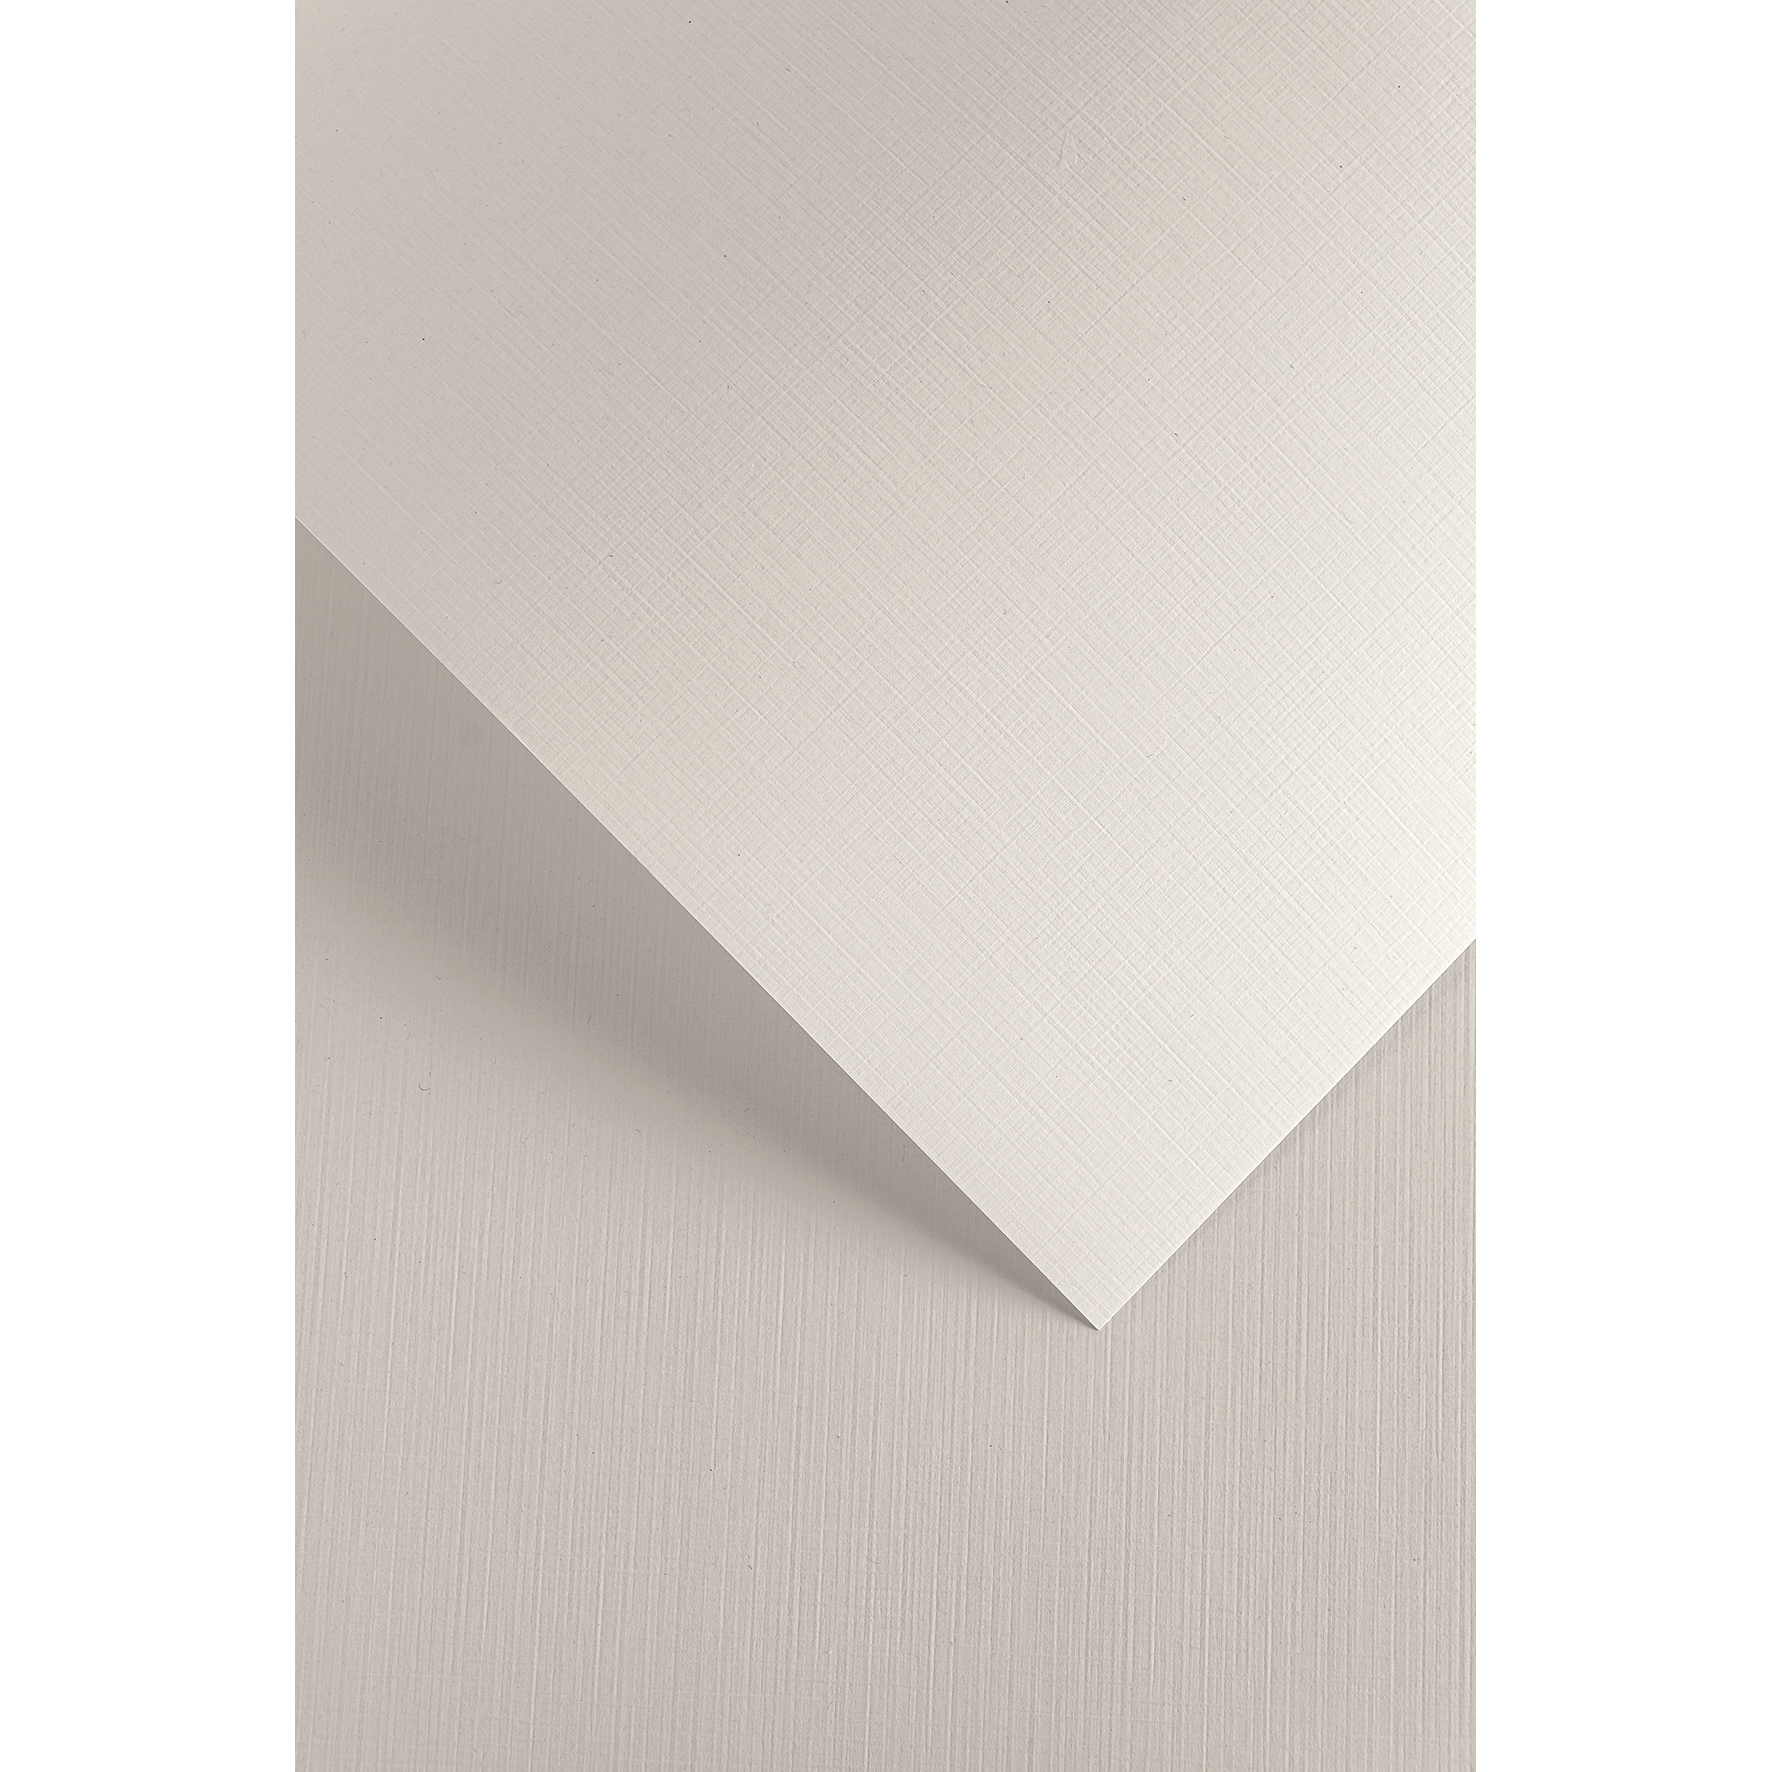 Ozdobný papír A3 Plátno bílá 250g, 50ks